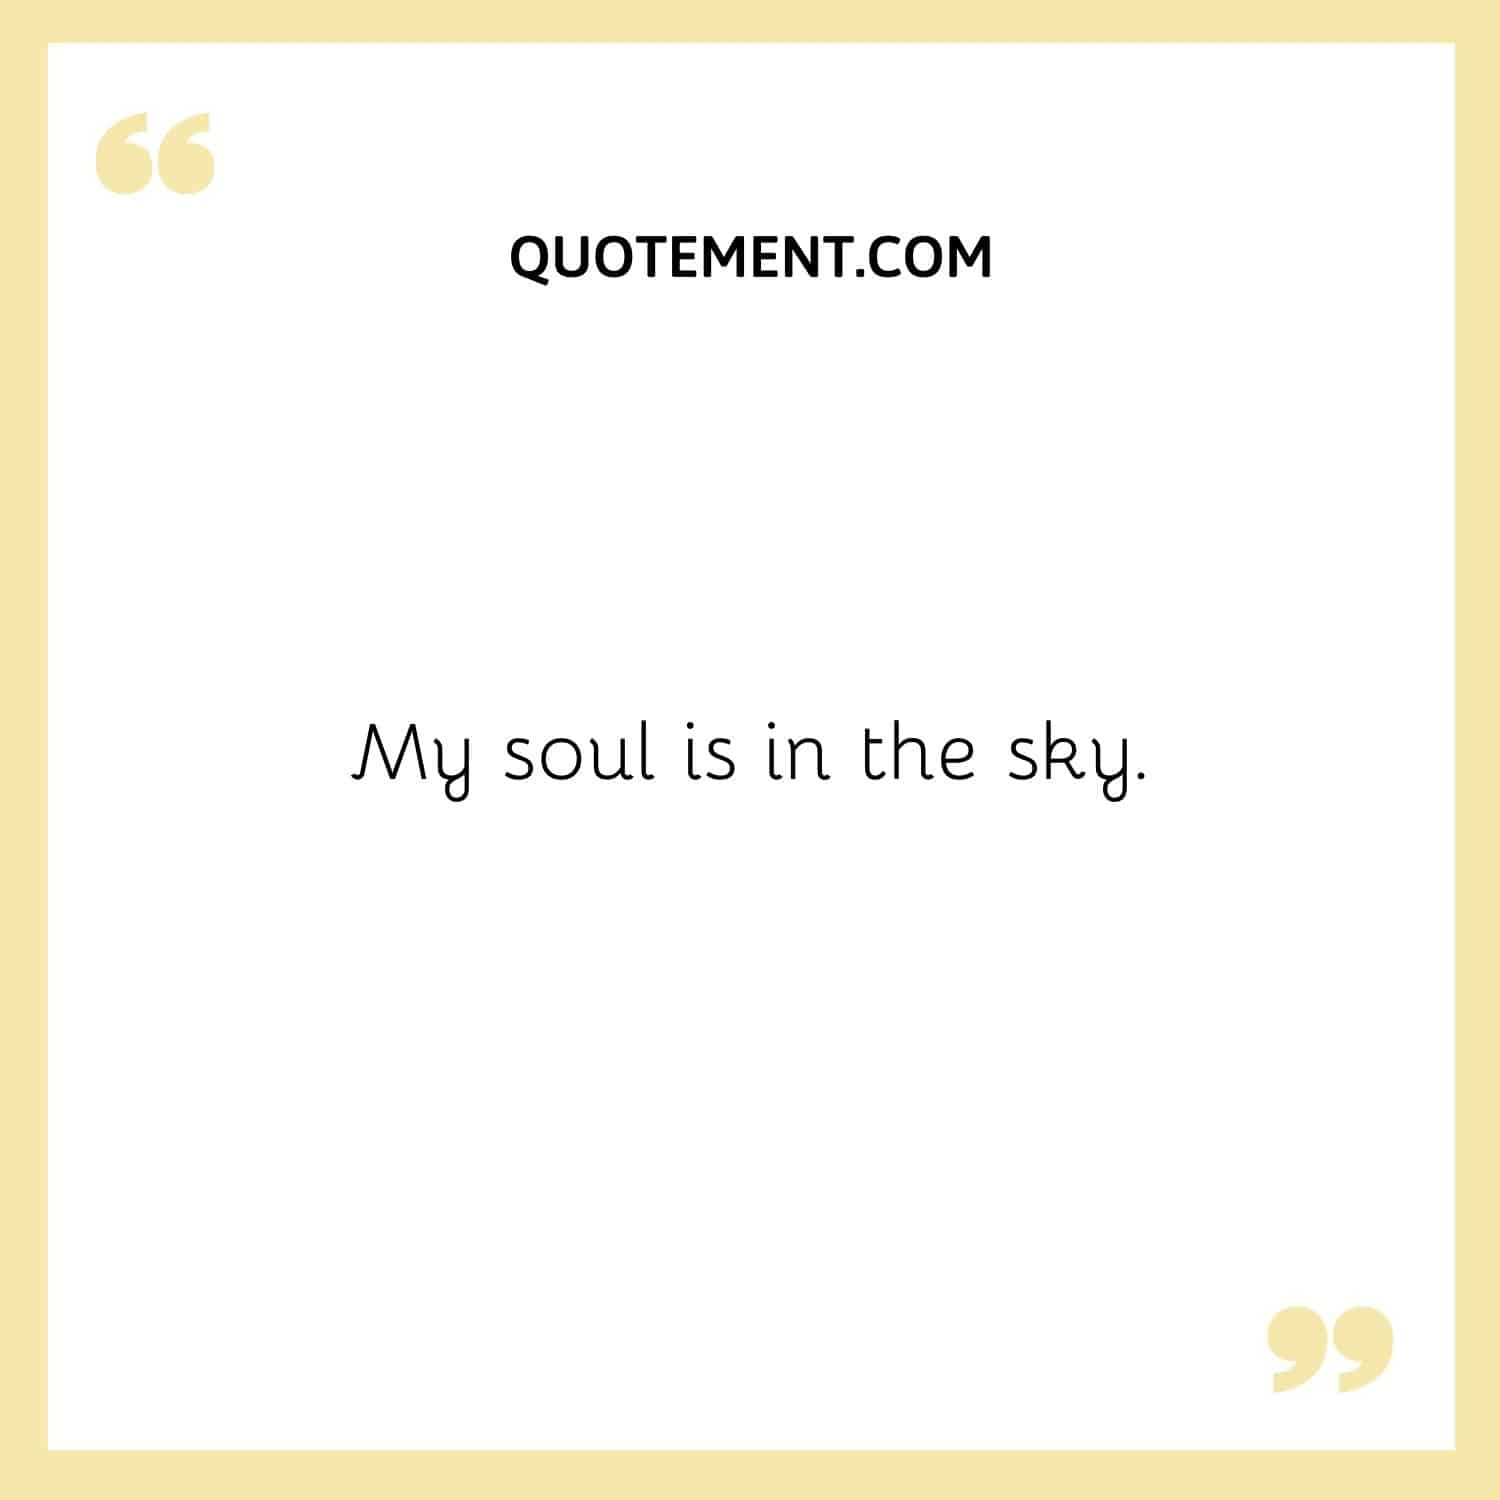 My soul is in the sky.